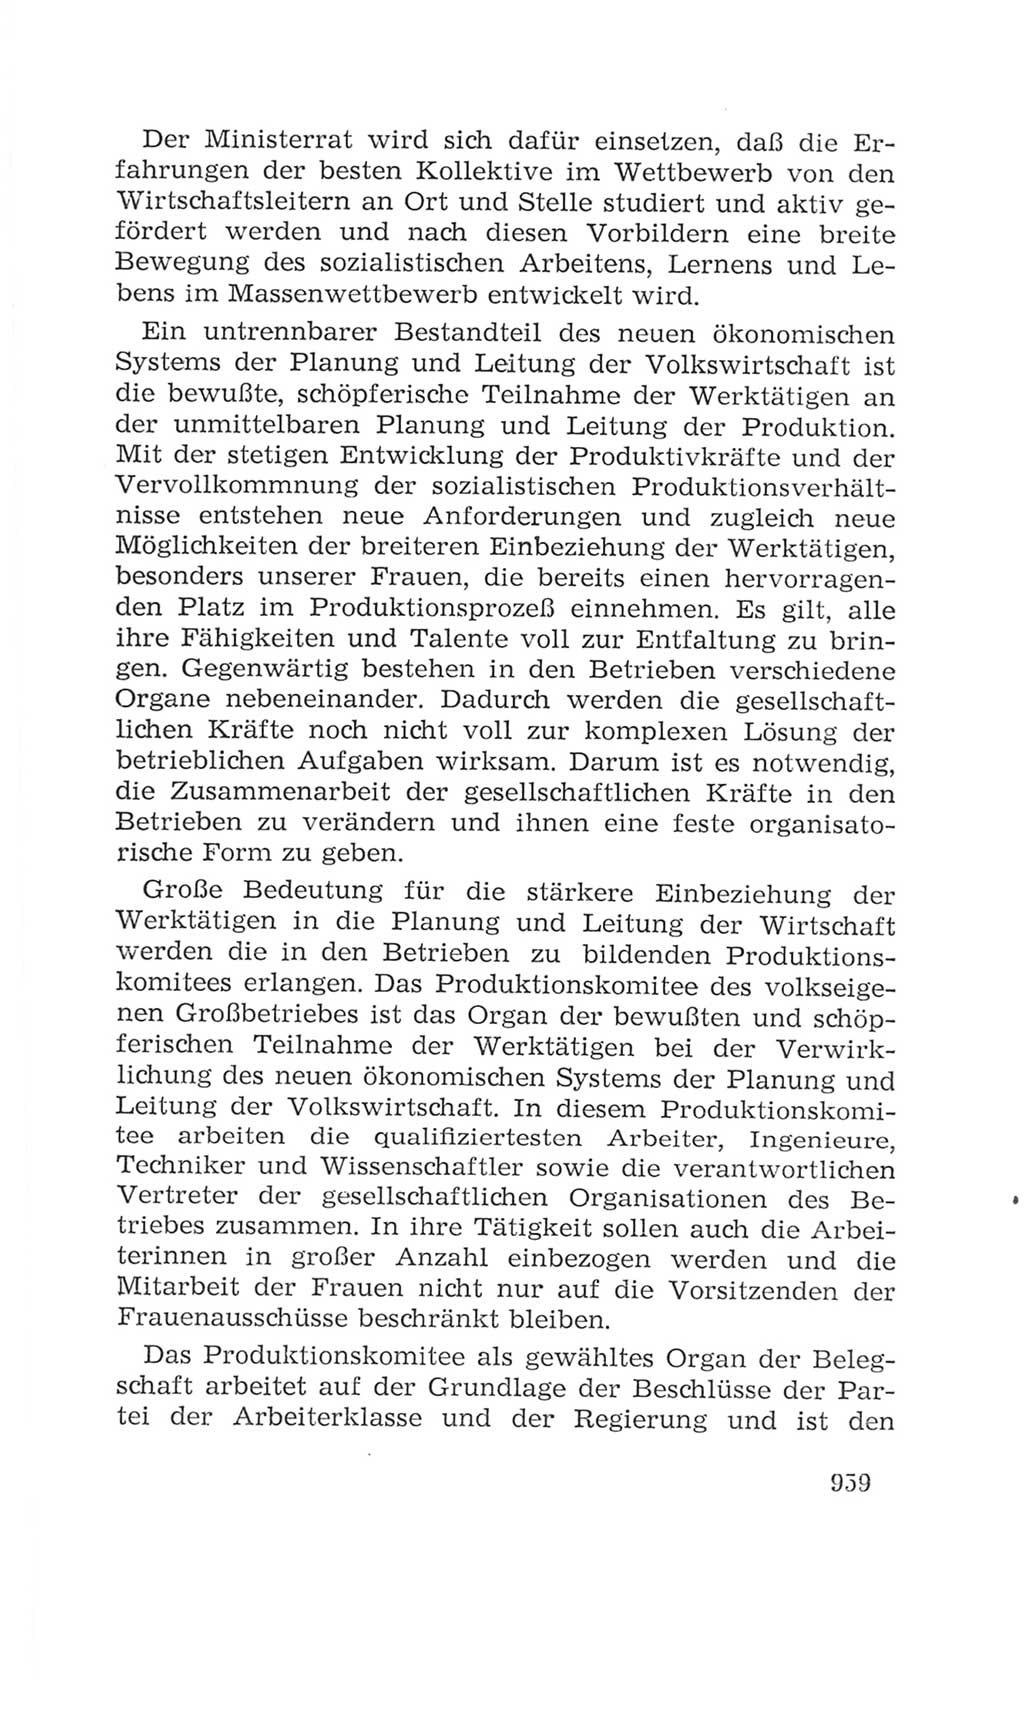 Volkskammer (VK) der Deutschen Demokratischen Republik (DDR), 4. Wahlperiode 1963-1967, Seite 959 (VK. DDR 4. WP. 1963-1967, S. 959)